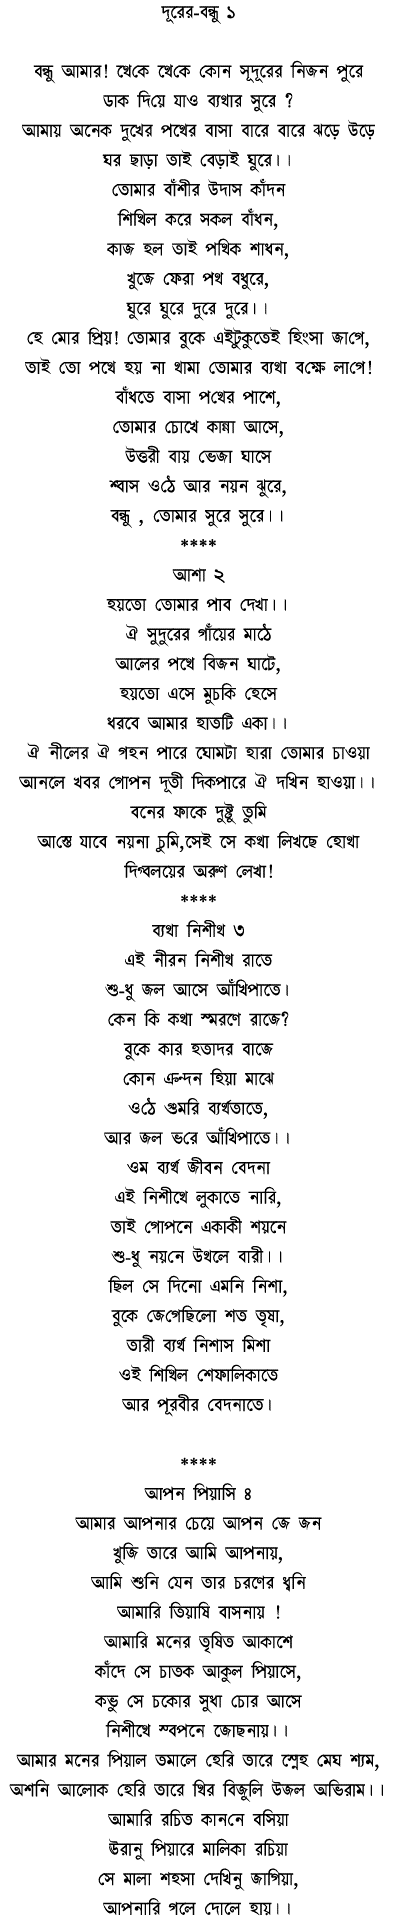 Bengali Poems